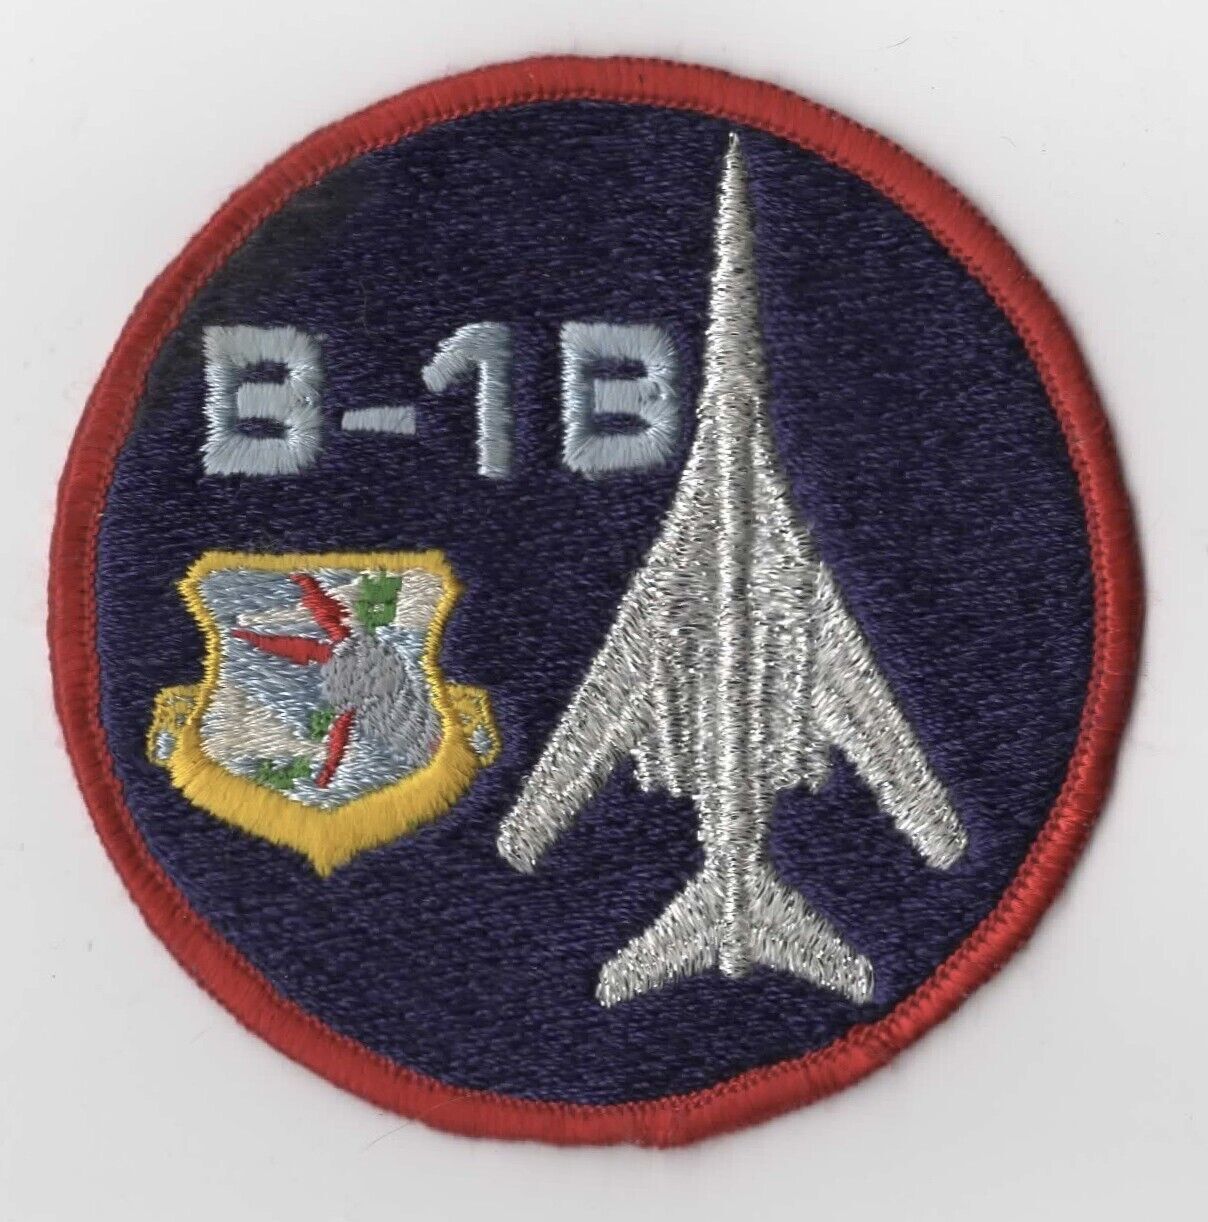 USAF Rockwell International B-1 Lancer Patch RED Bdr. [5D-368]